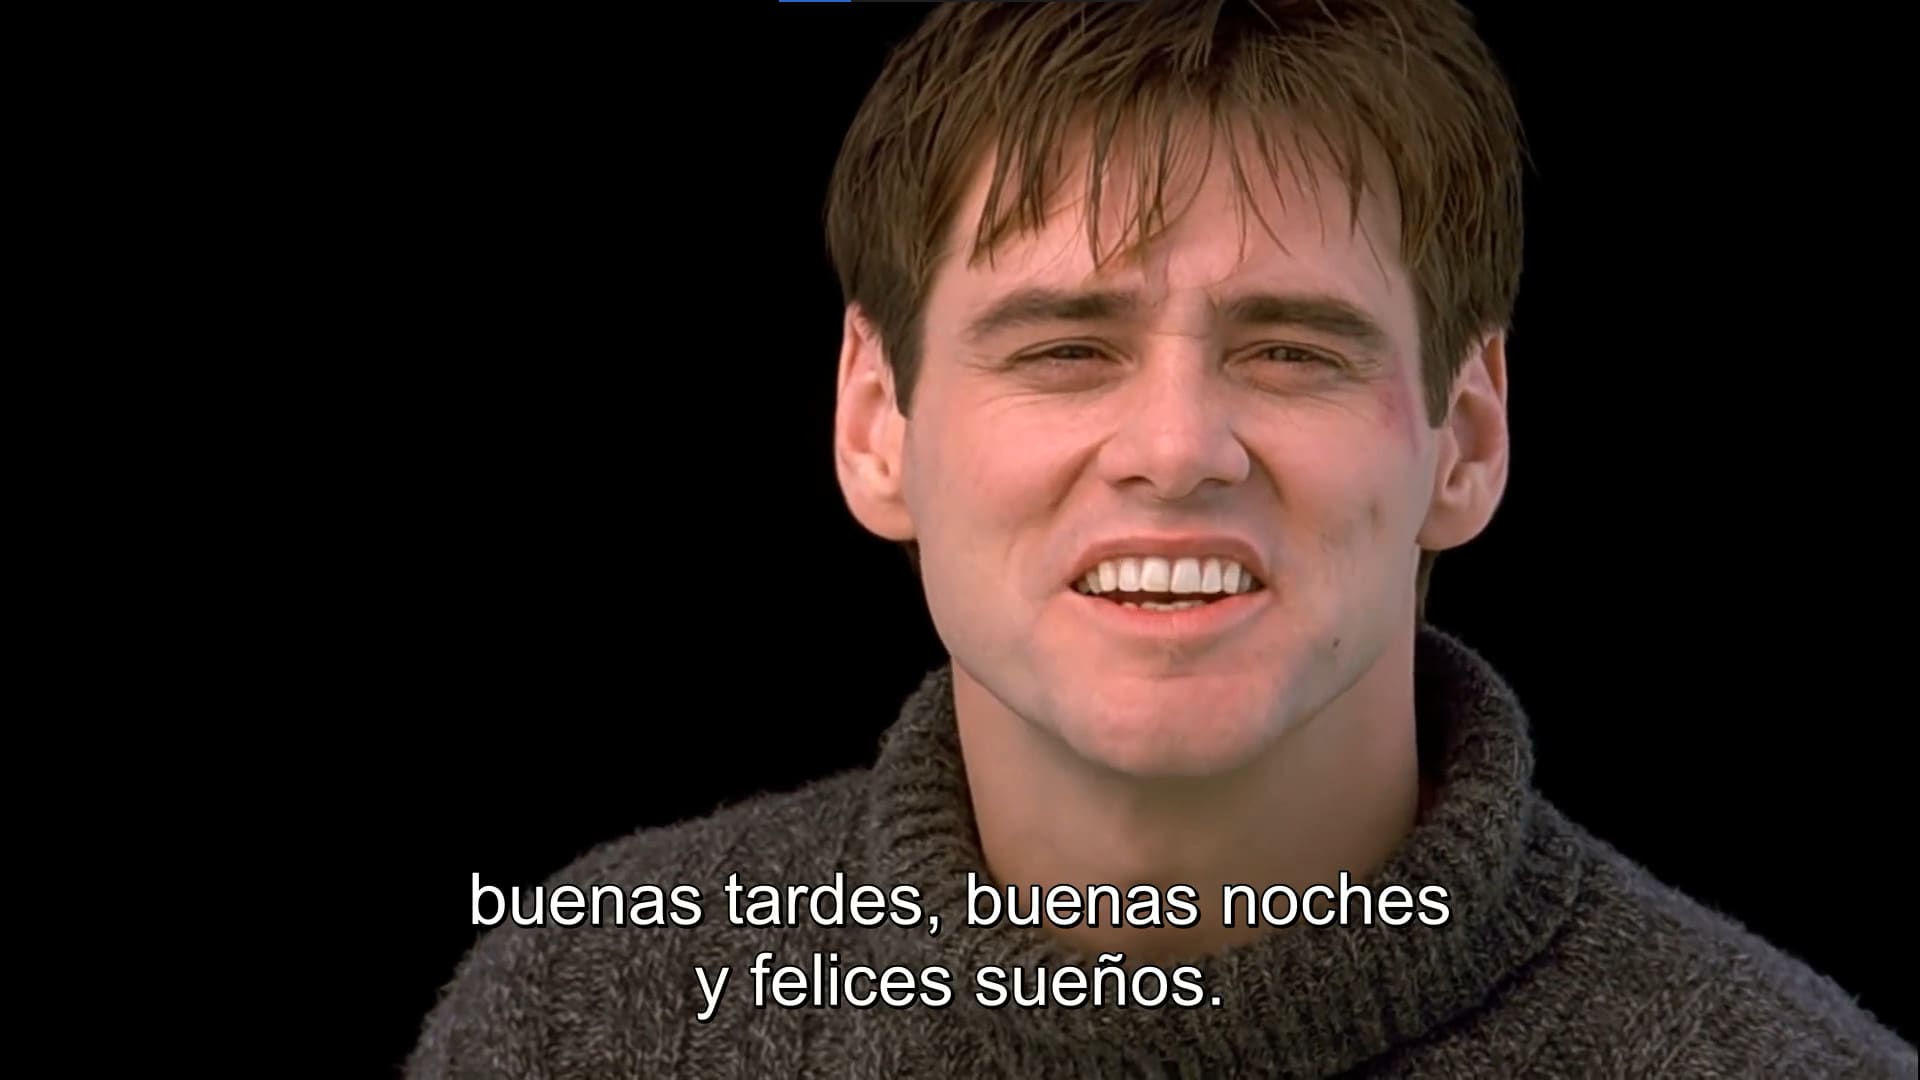 subtitles in spanish